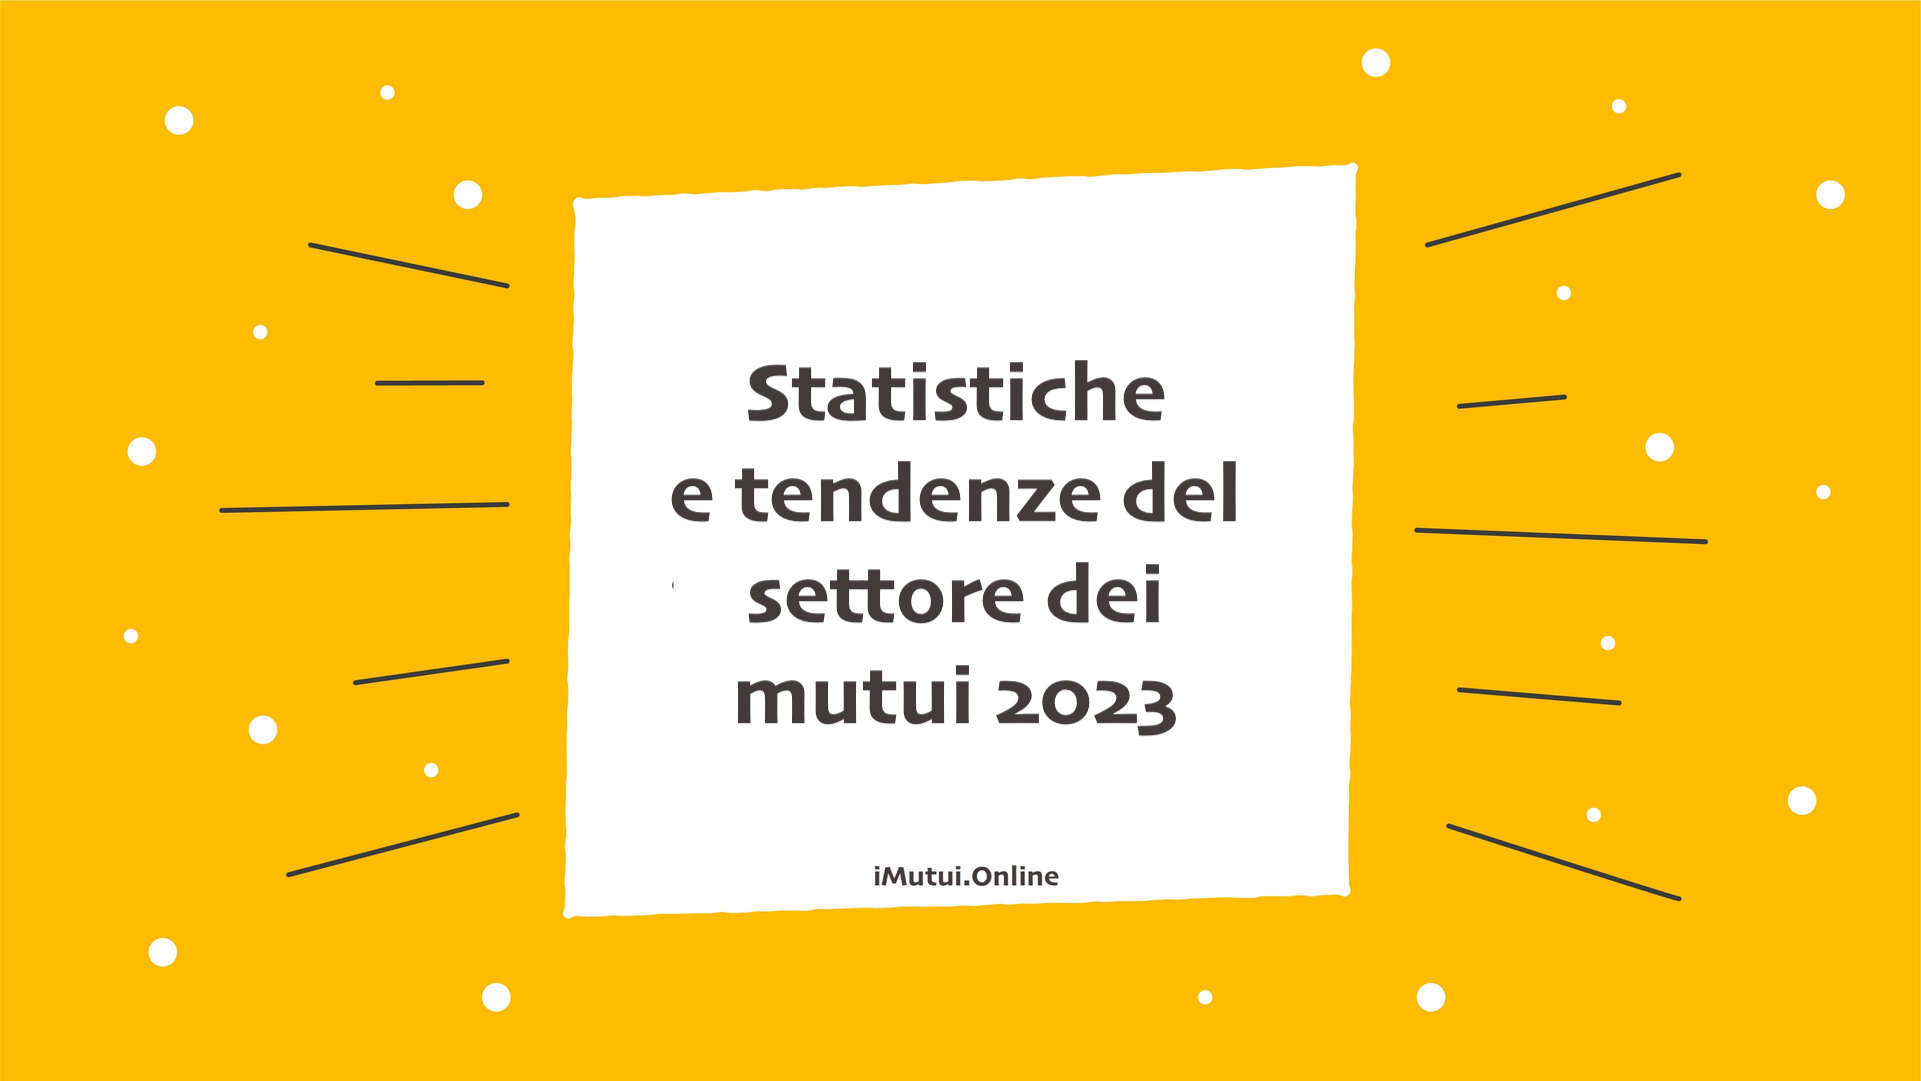 Statistiche e tendenze del settore dei mutui 2023